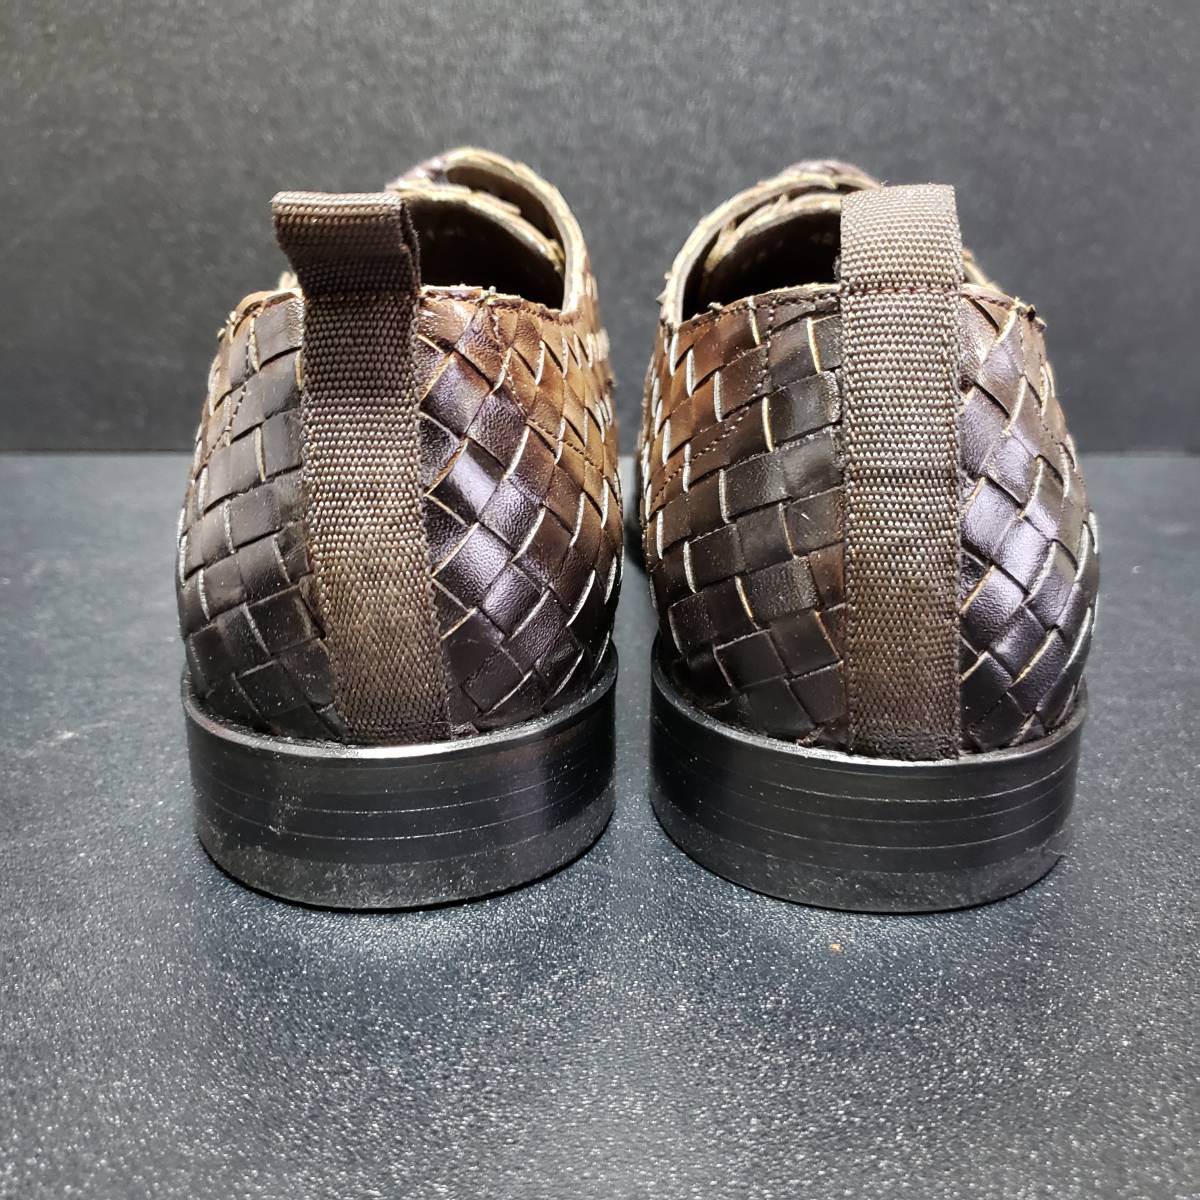 カルペディエムズィルト(Carpe diem sylt) イタリア製革靴 40_画像8